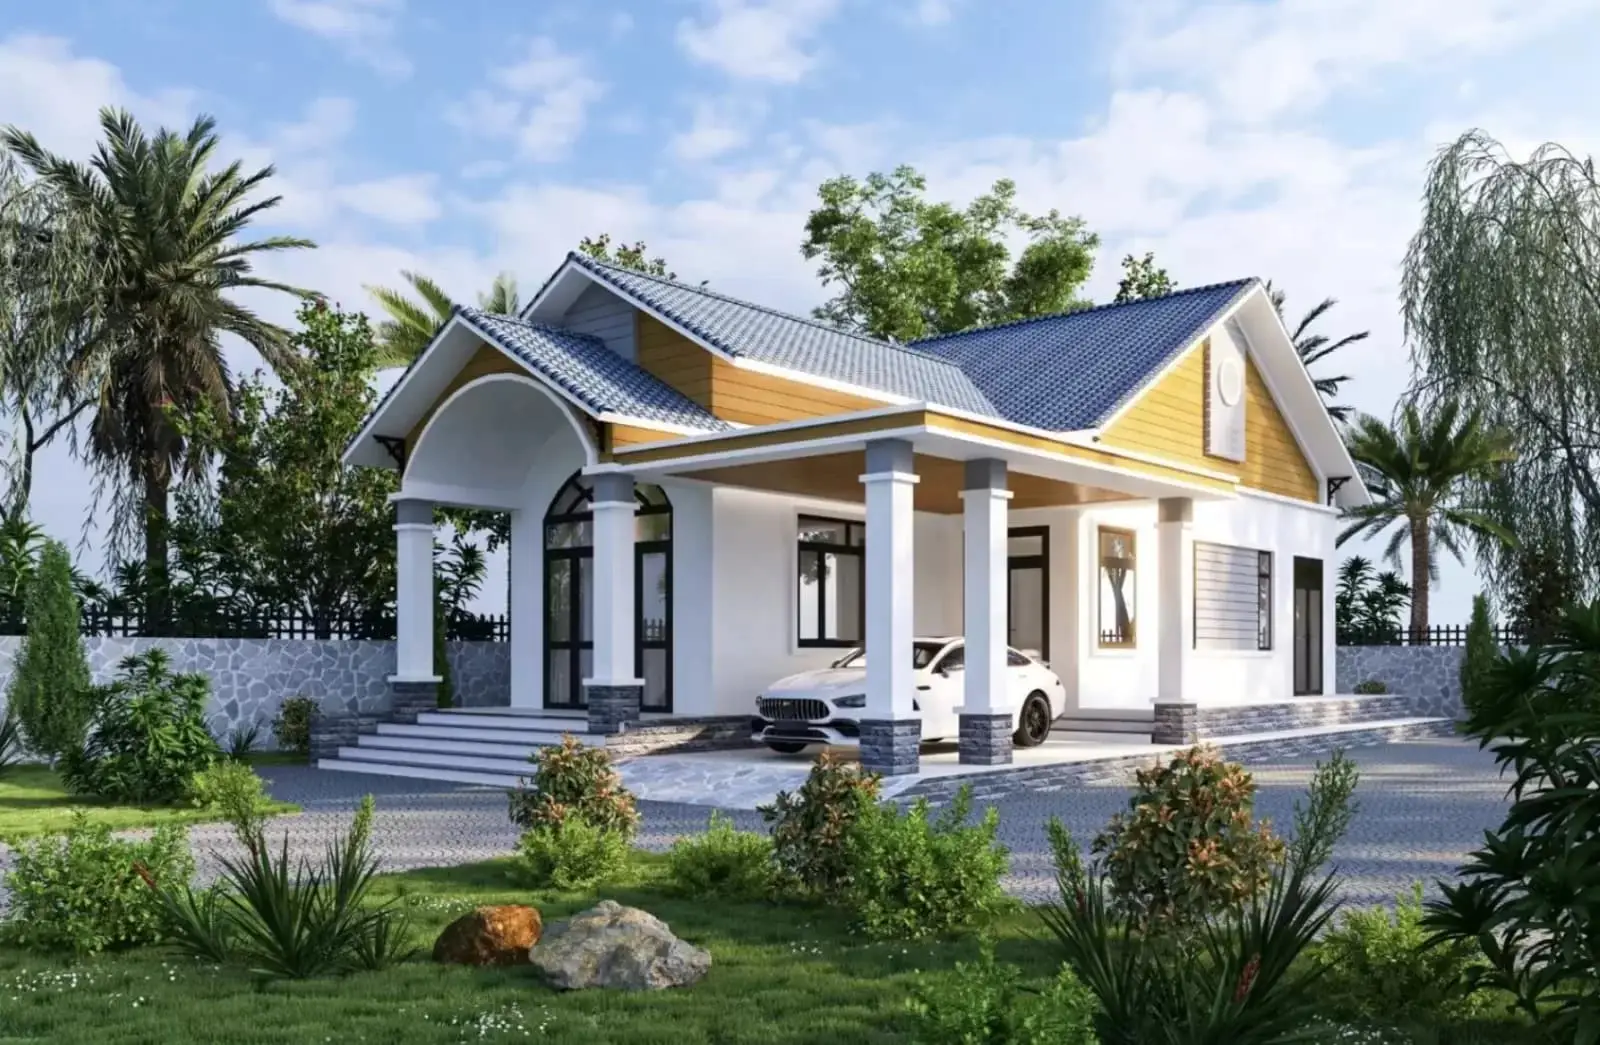 Thiết kế căn biệt thự mái Thái thu hút với vẻ đẹp hiện đại kết hợp truyền thống